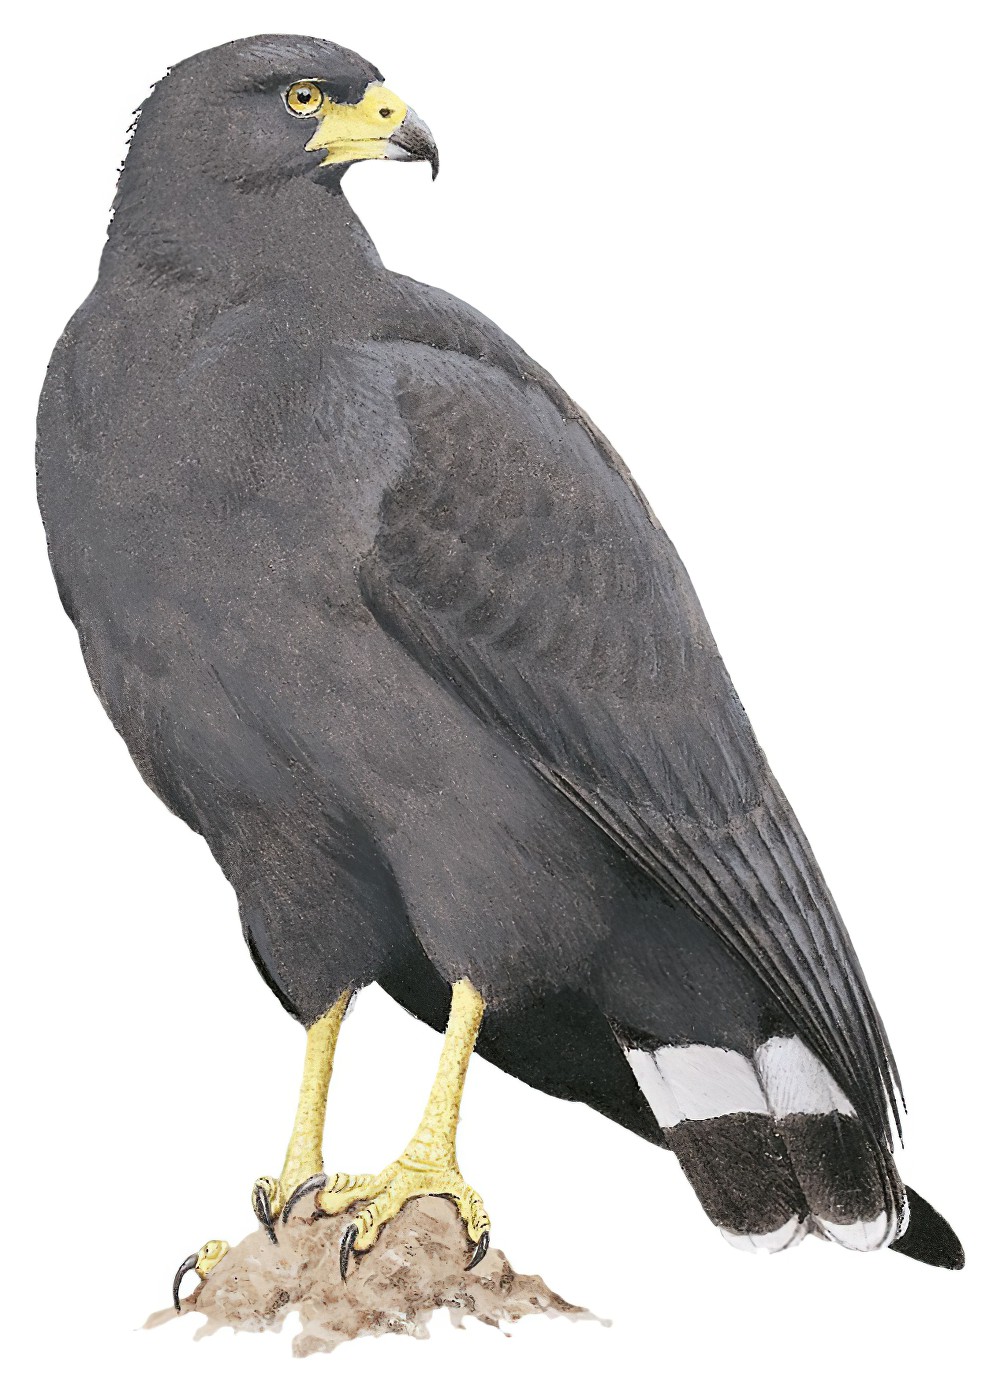 Solitary Eagle / Buteogallus solitarius